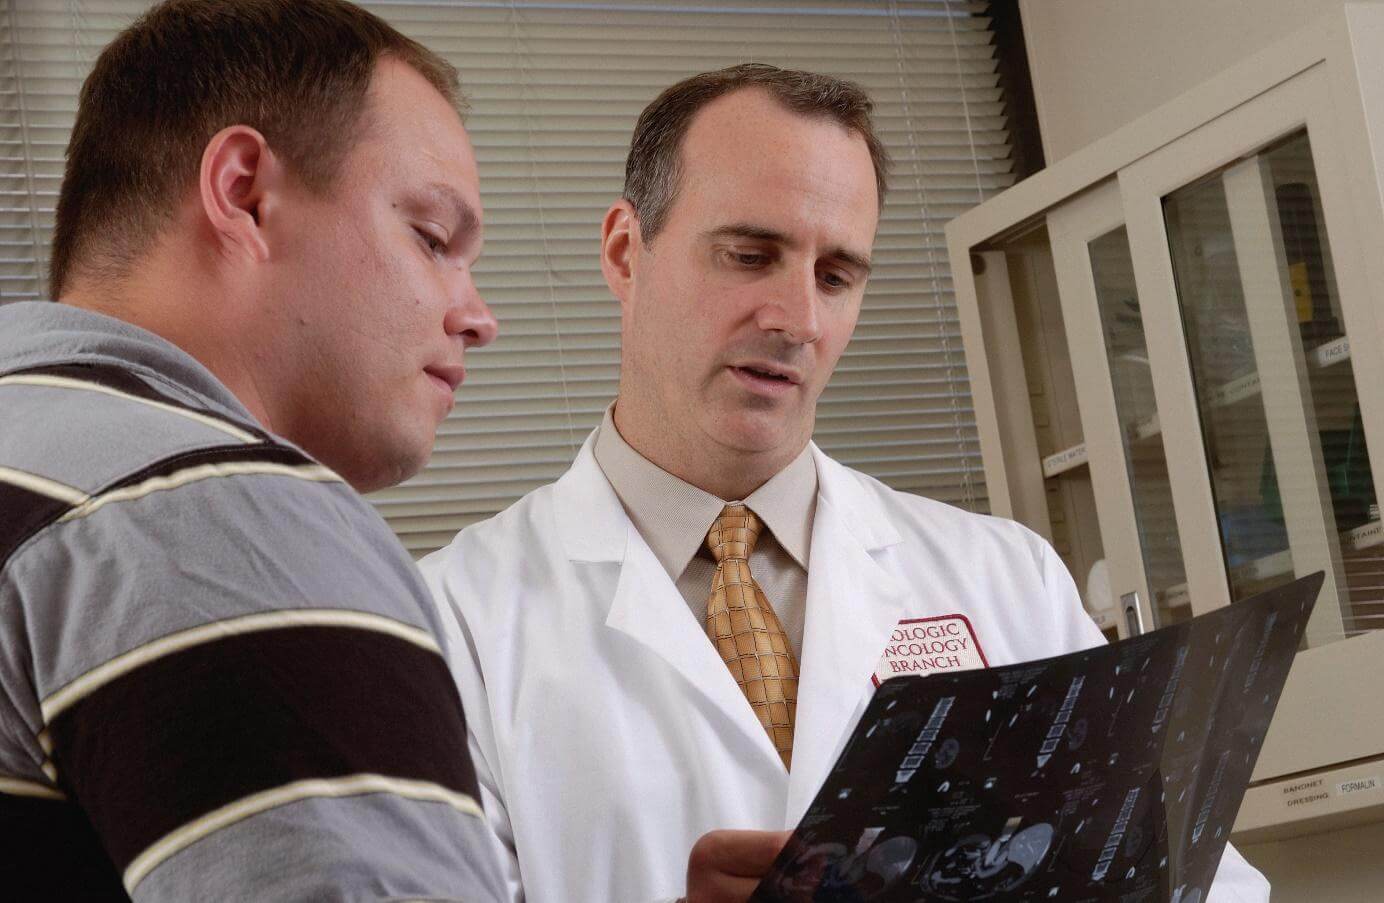 Ein Arzt in einem weißen Kittel zeigt und erklärt einem Patienten ein MRT-Bild in einer medizinischen Einrichtung.